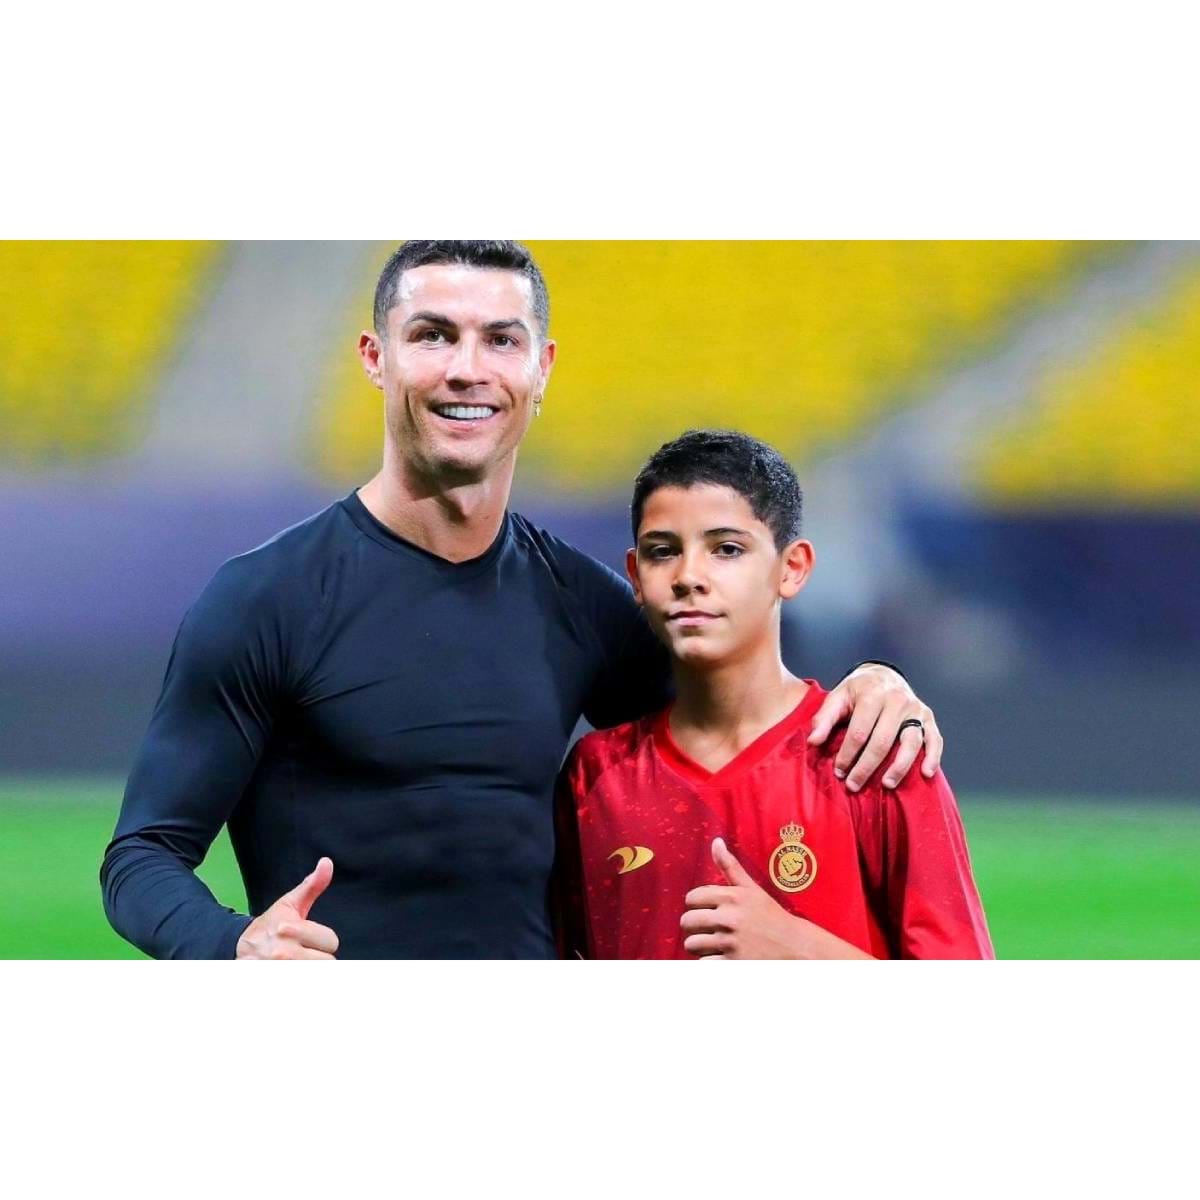 Doentes por Futebol - Cristiano Ronaldo nos tempos de Sporting. 🇵🇹